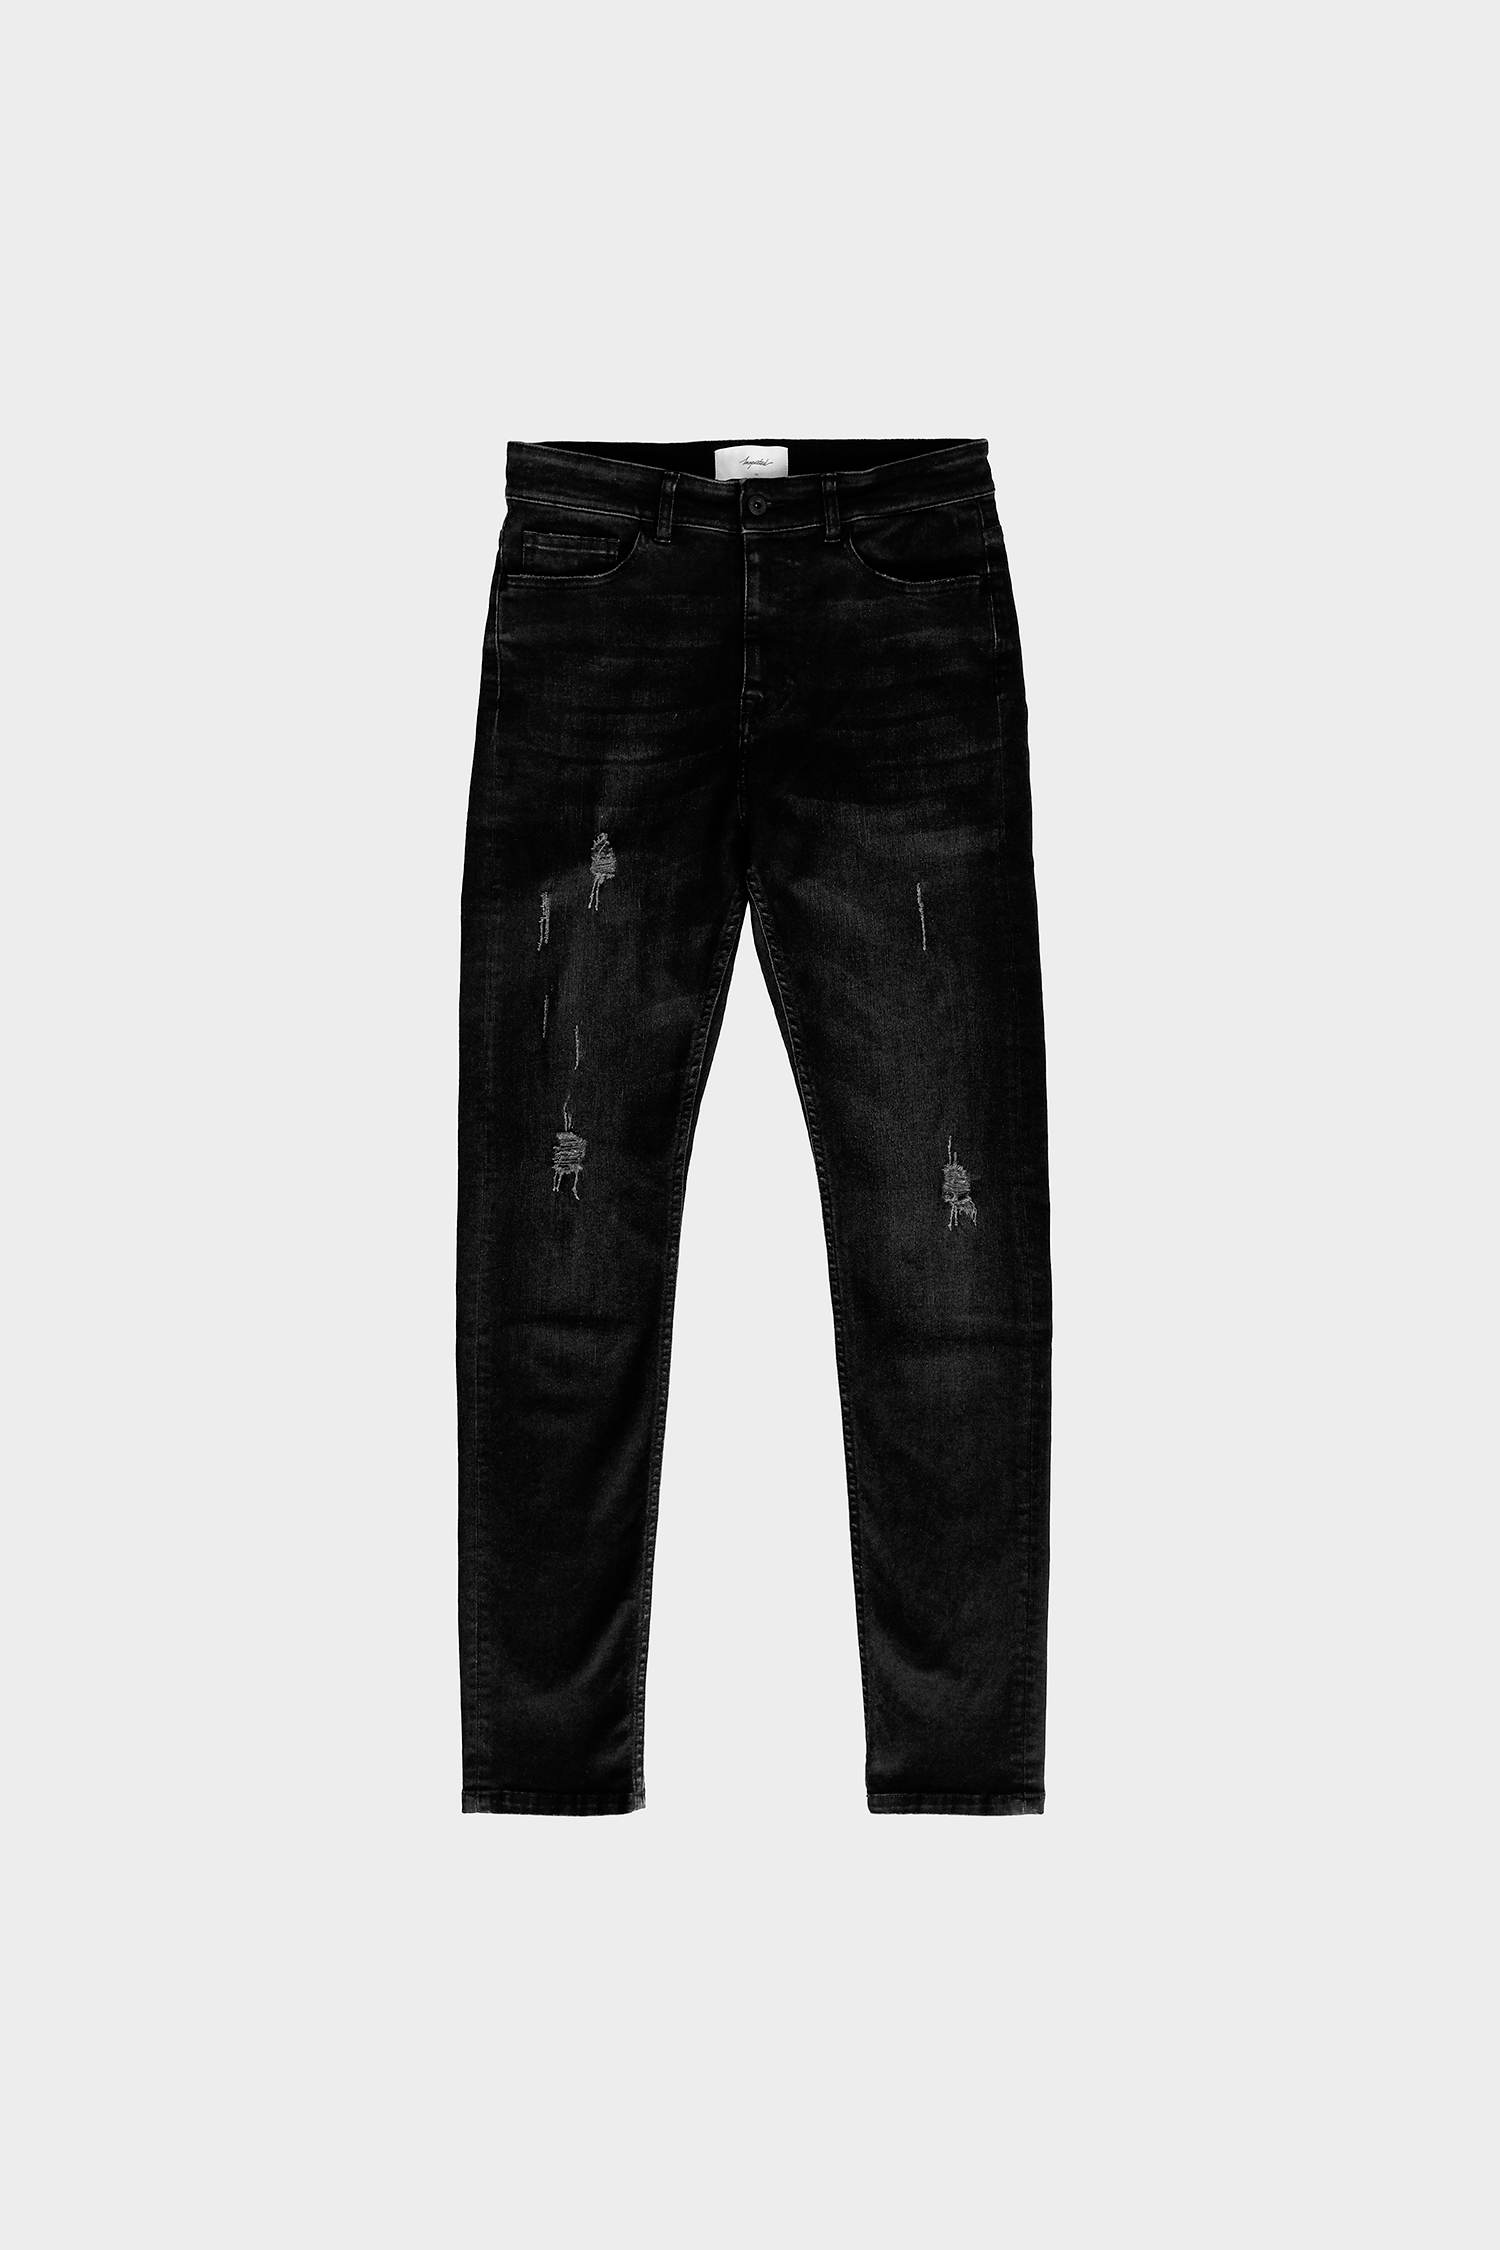 Denim Jeans — Vintage Black